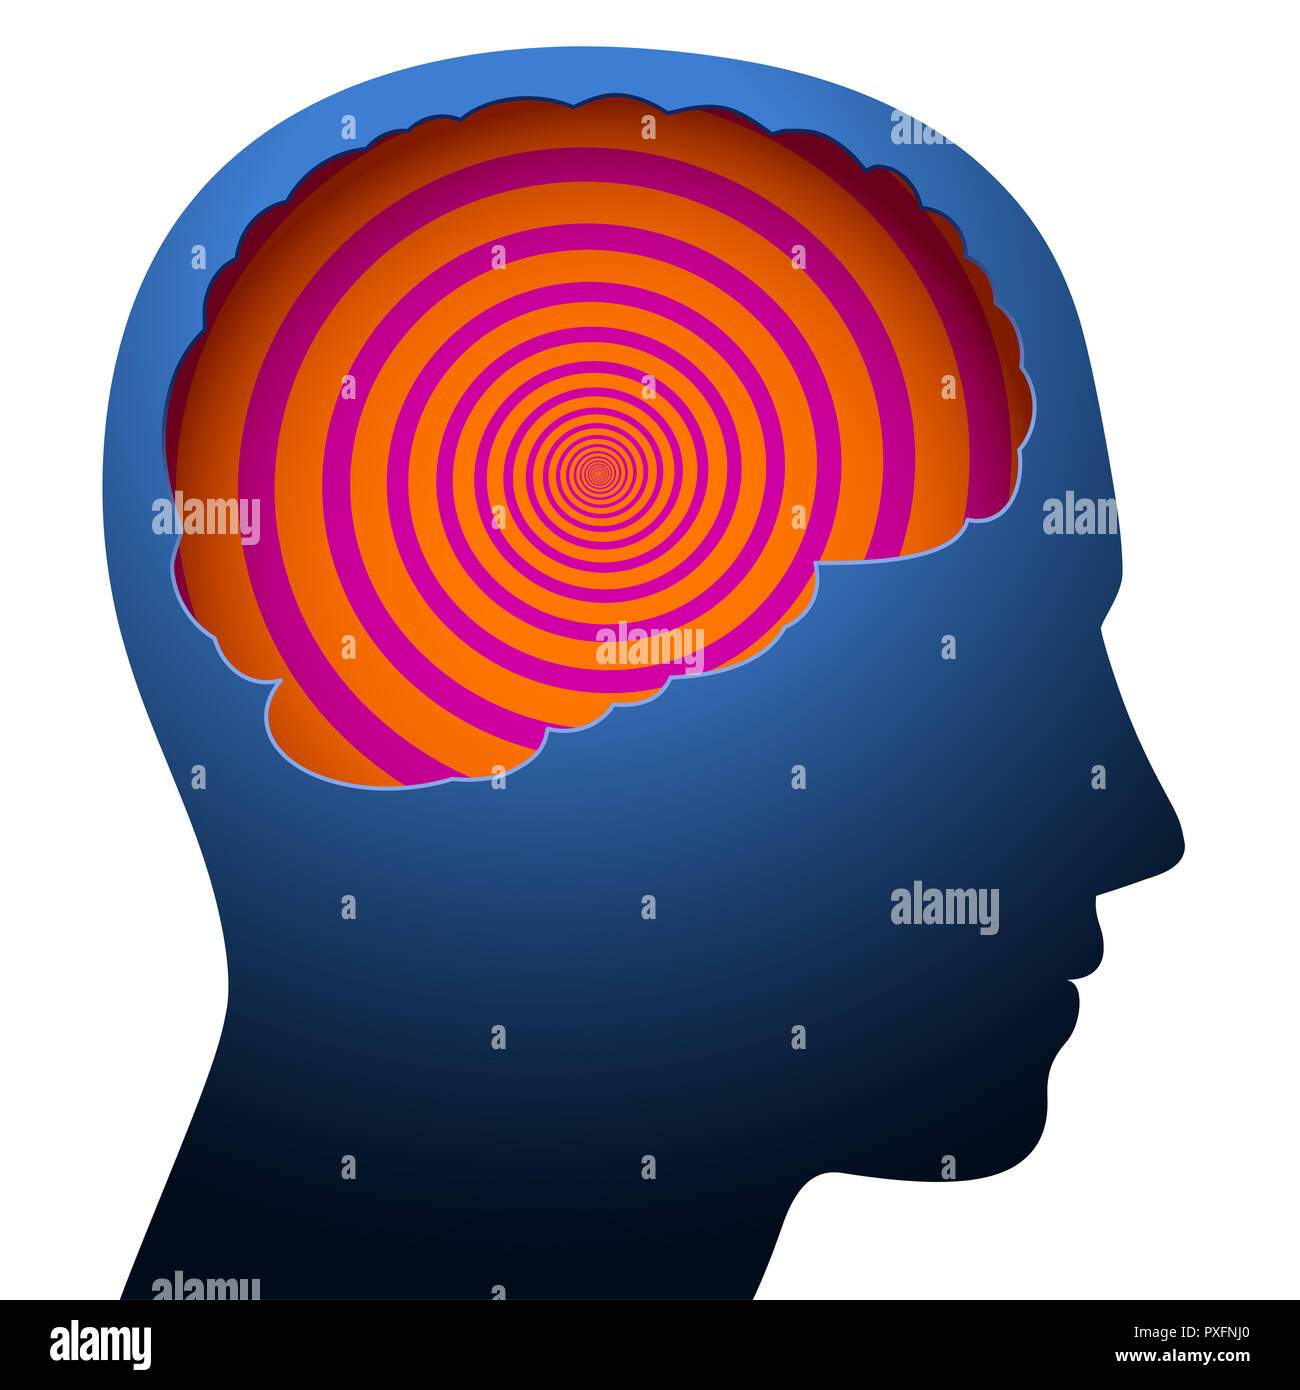 Confusione mentale, vertigini, simboleggiata con una spirale psichedelica nel cervello di una persona giovane. Foto Stock